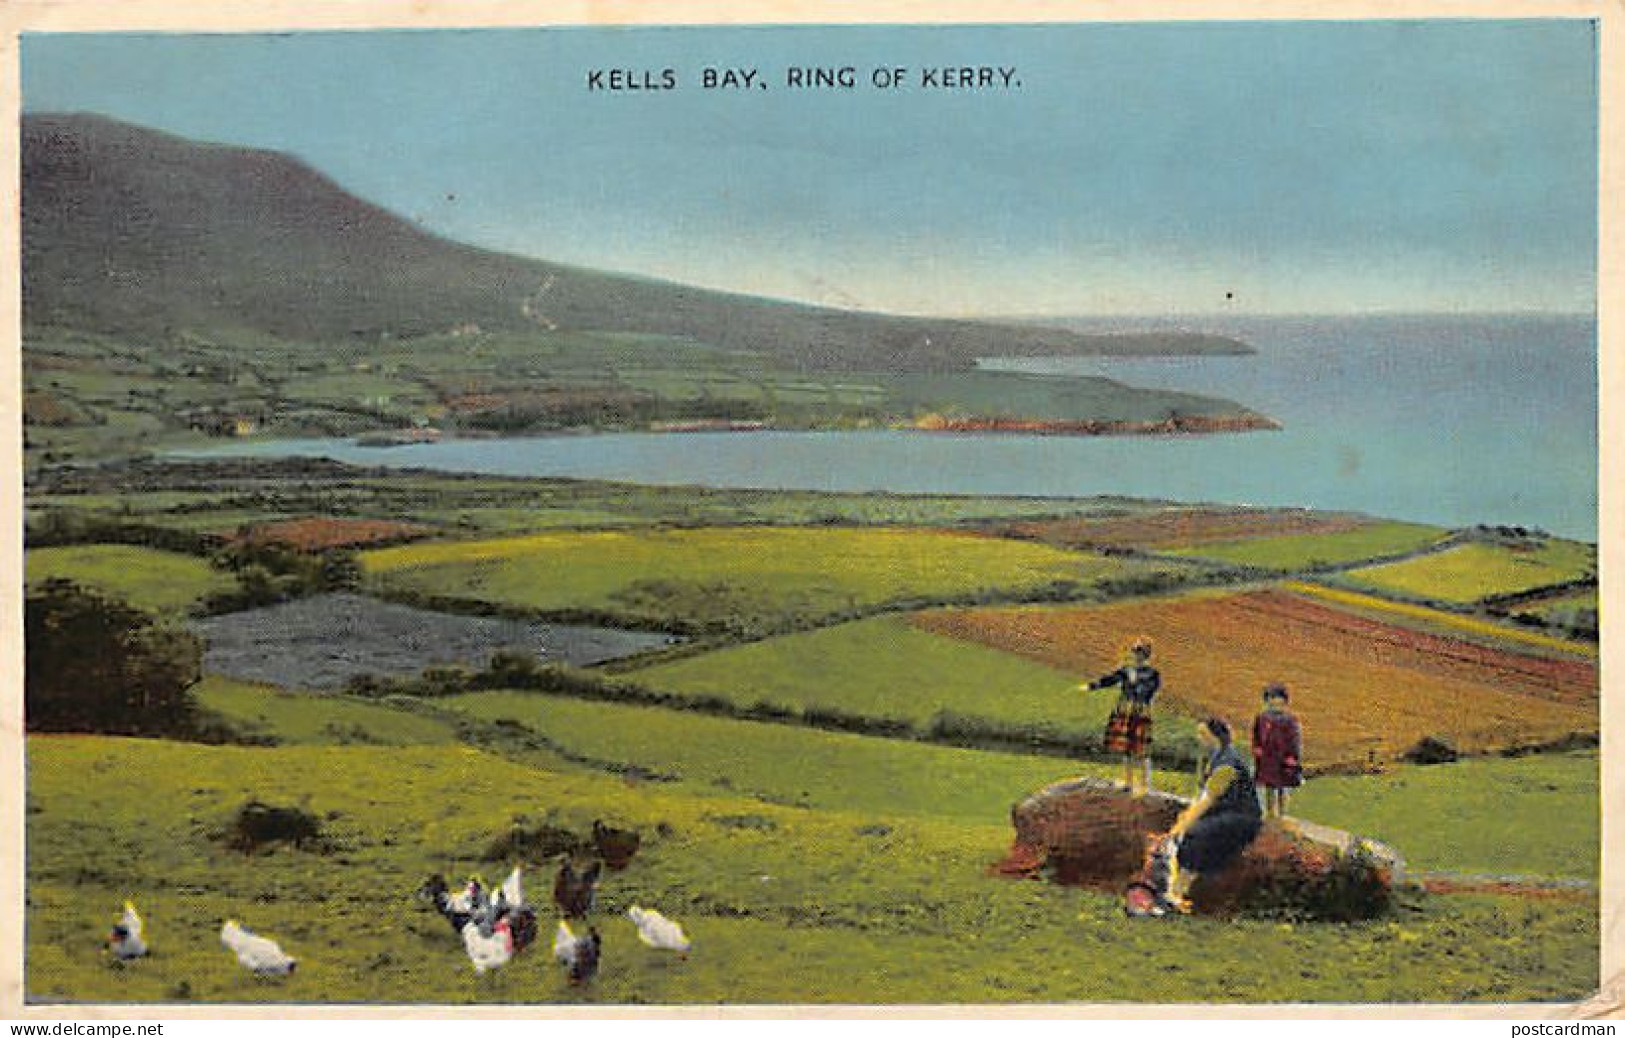 ÉIRE Ireland - Ring Of Kerry - Kells Bay - Kerry